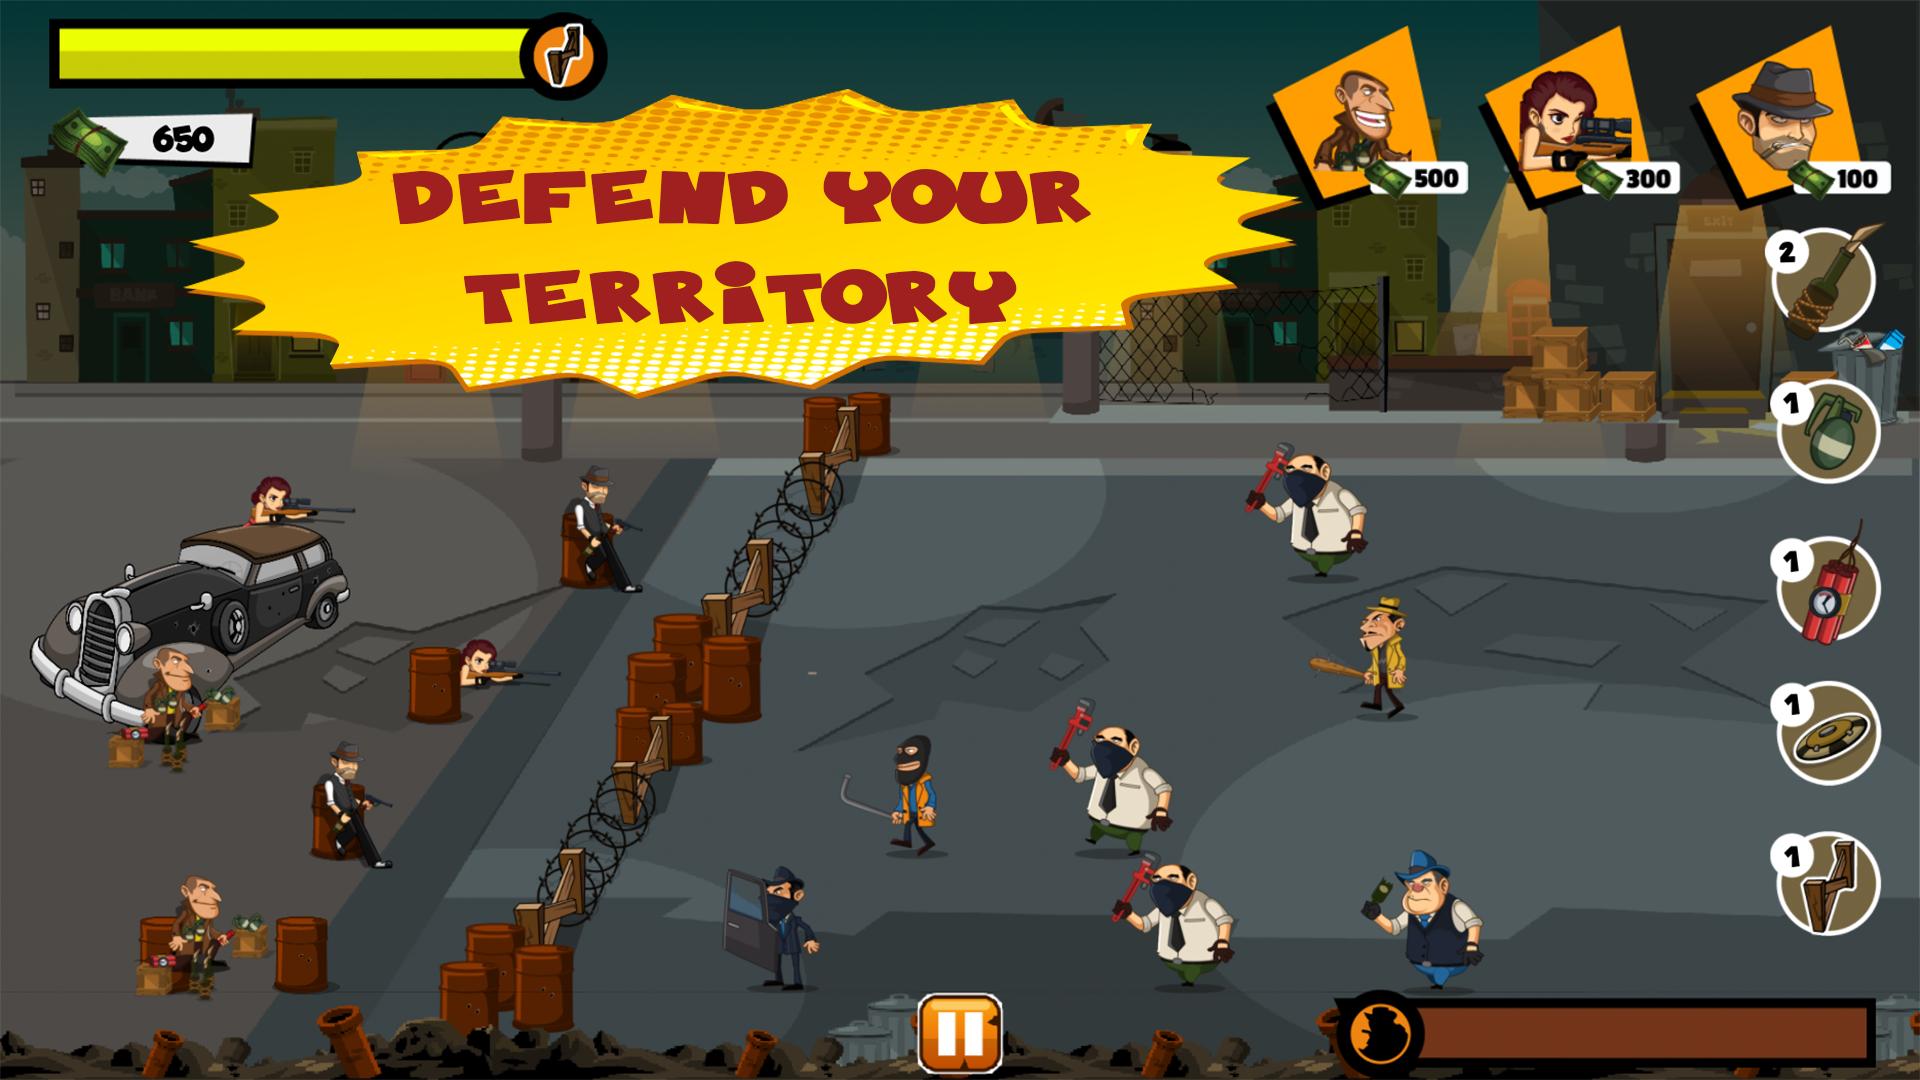 Gang Wars game. Territory Wars. РОБЛОКС, защита базы хелоин. Gangs wars pixel